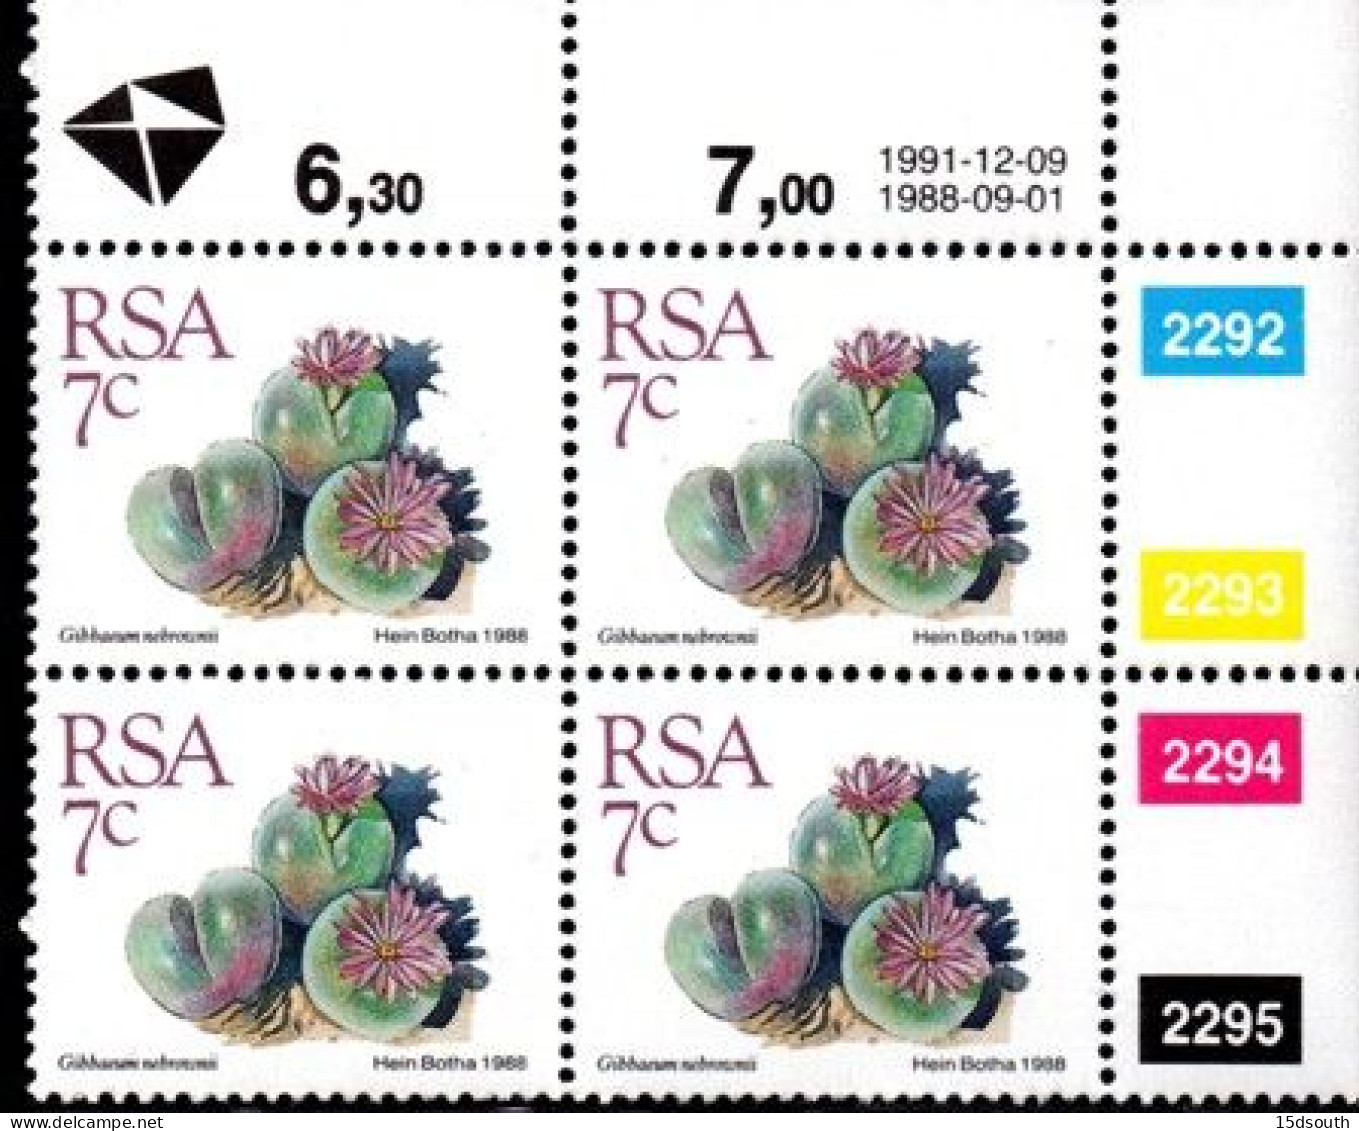 South Africa - 1991 Succulents 7c Control Block (1991.12.09) (**) - Hojas Bloque